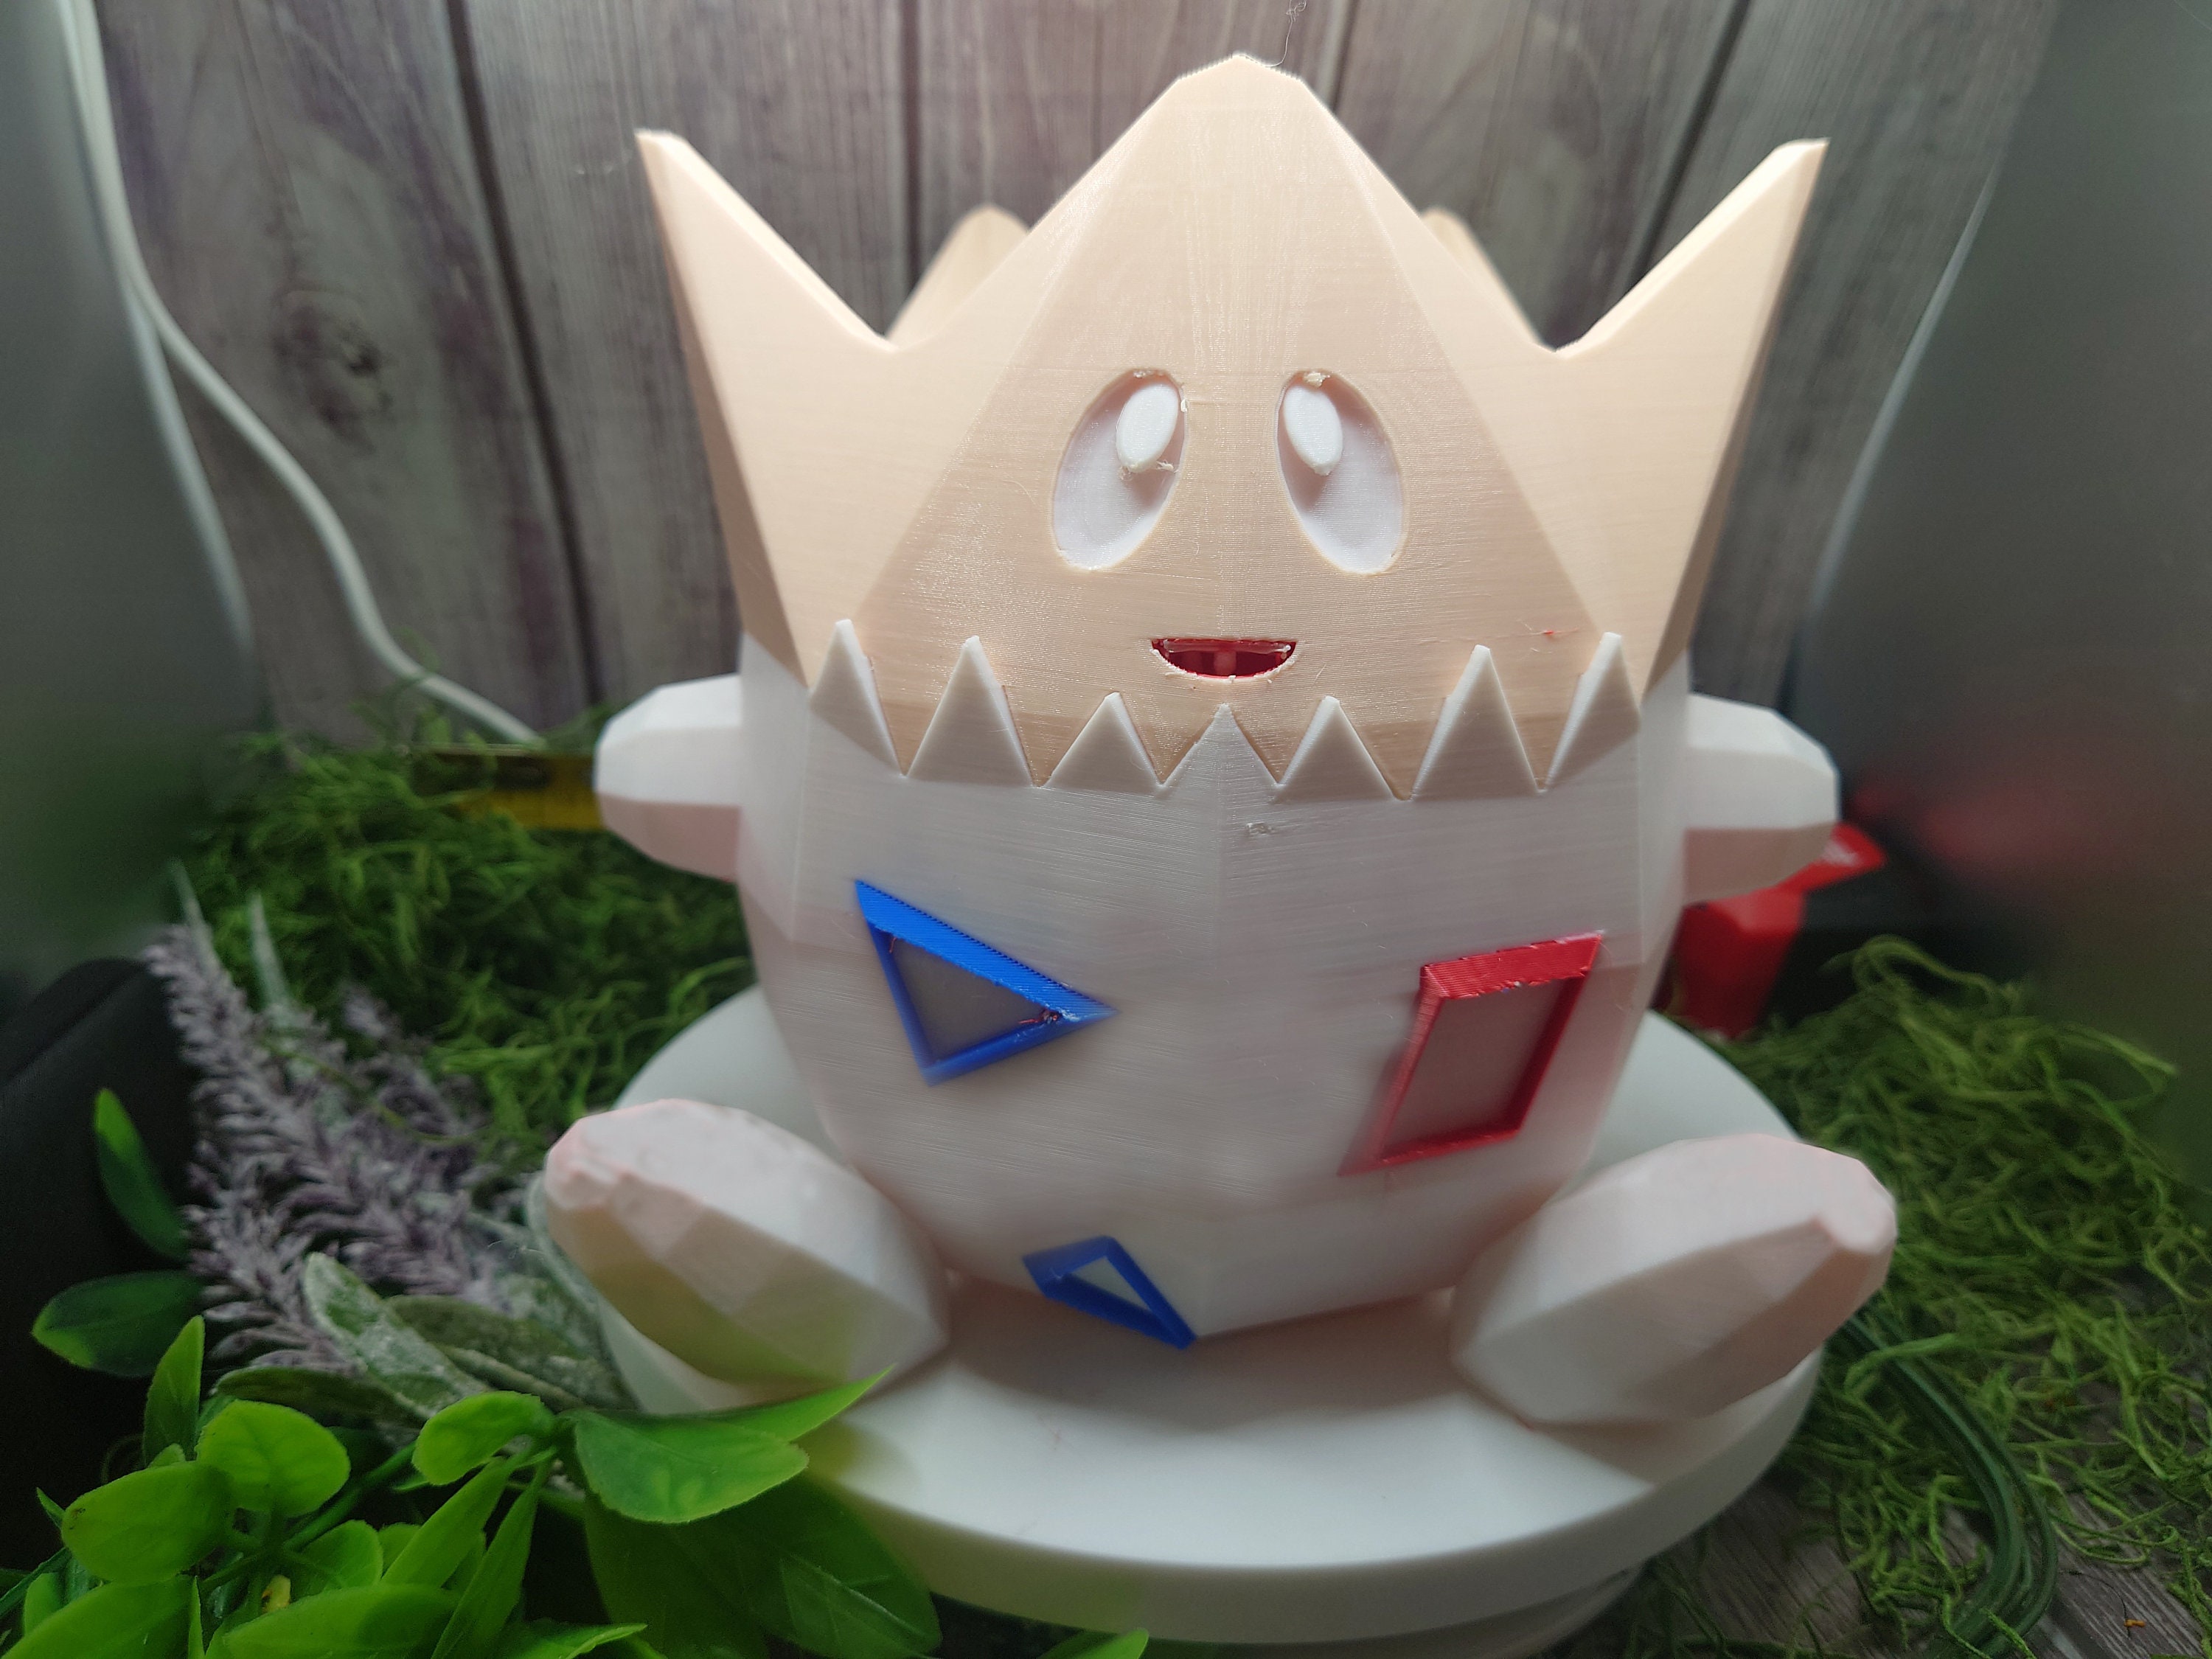 PaperPokés - Pokémon Papercraft: PHIONE